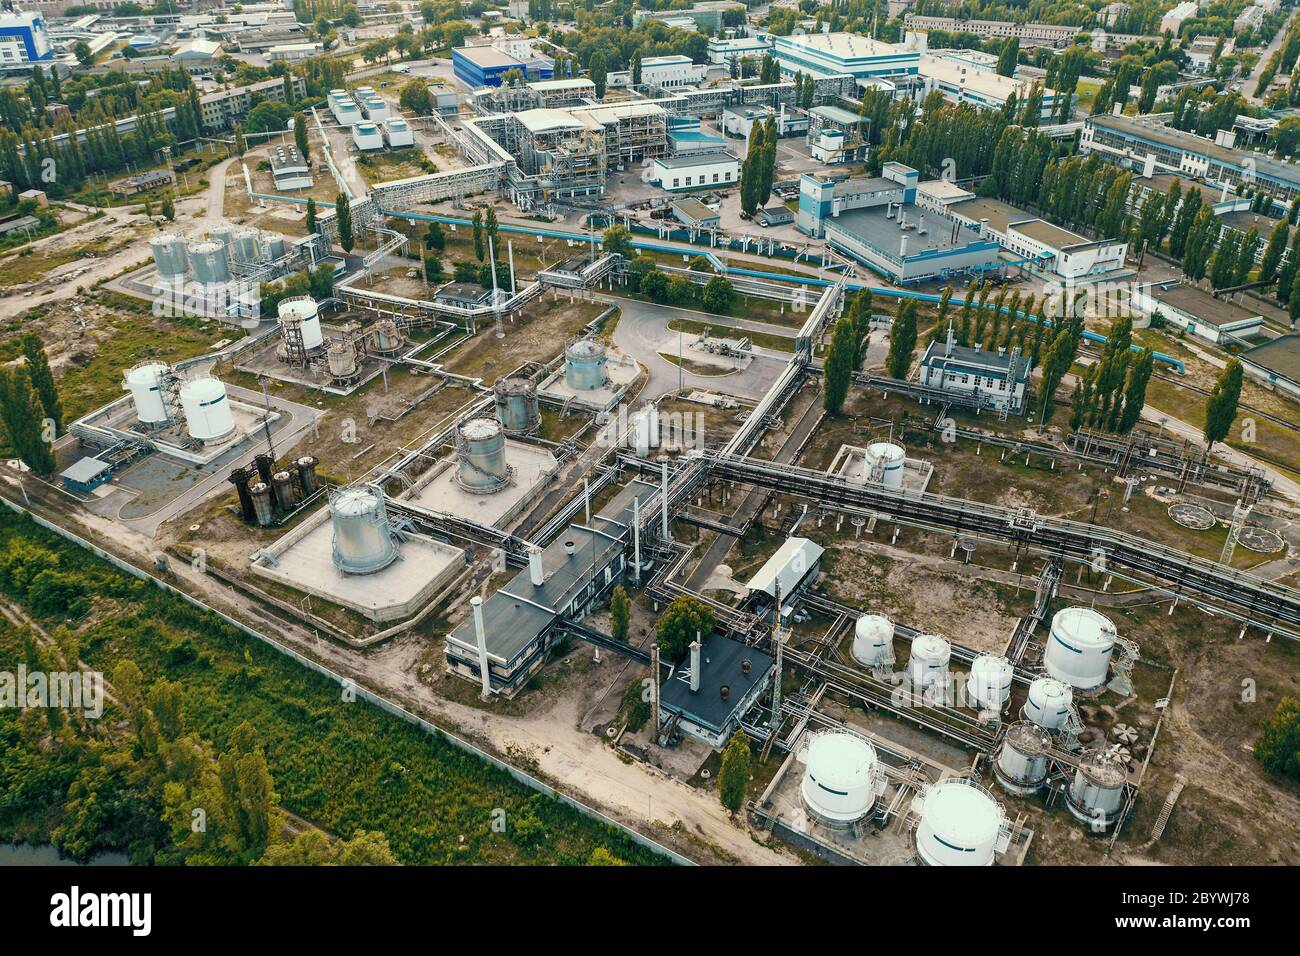 Serbatoi chimici immagazzini in fabbrica industriale petrolchimica, vista aerea dal drone, toned Foto Stock